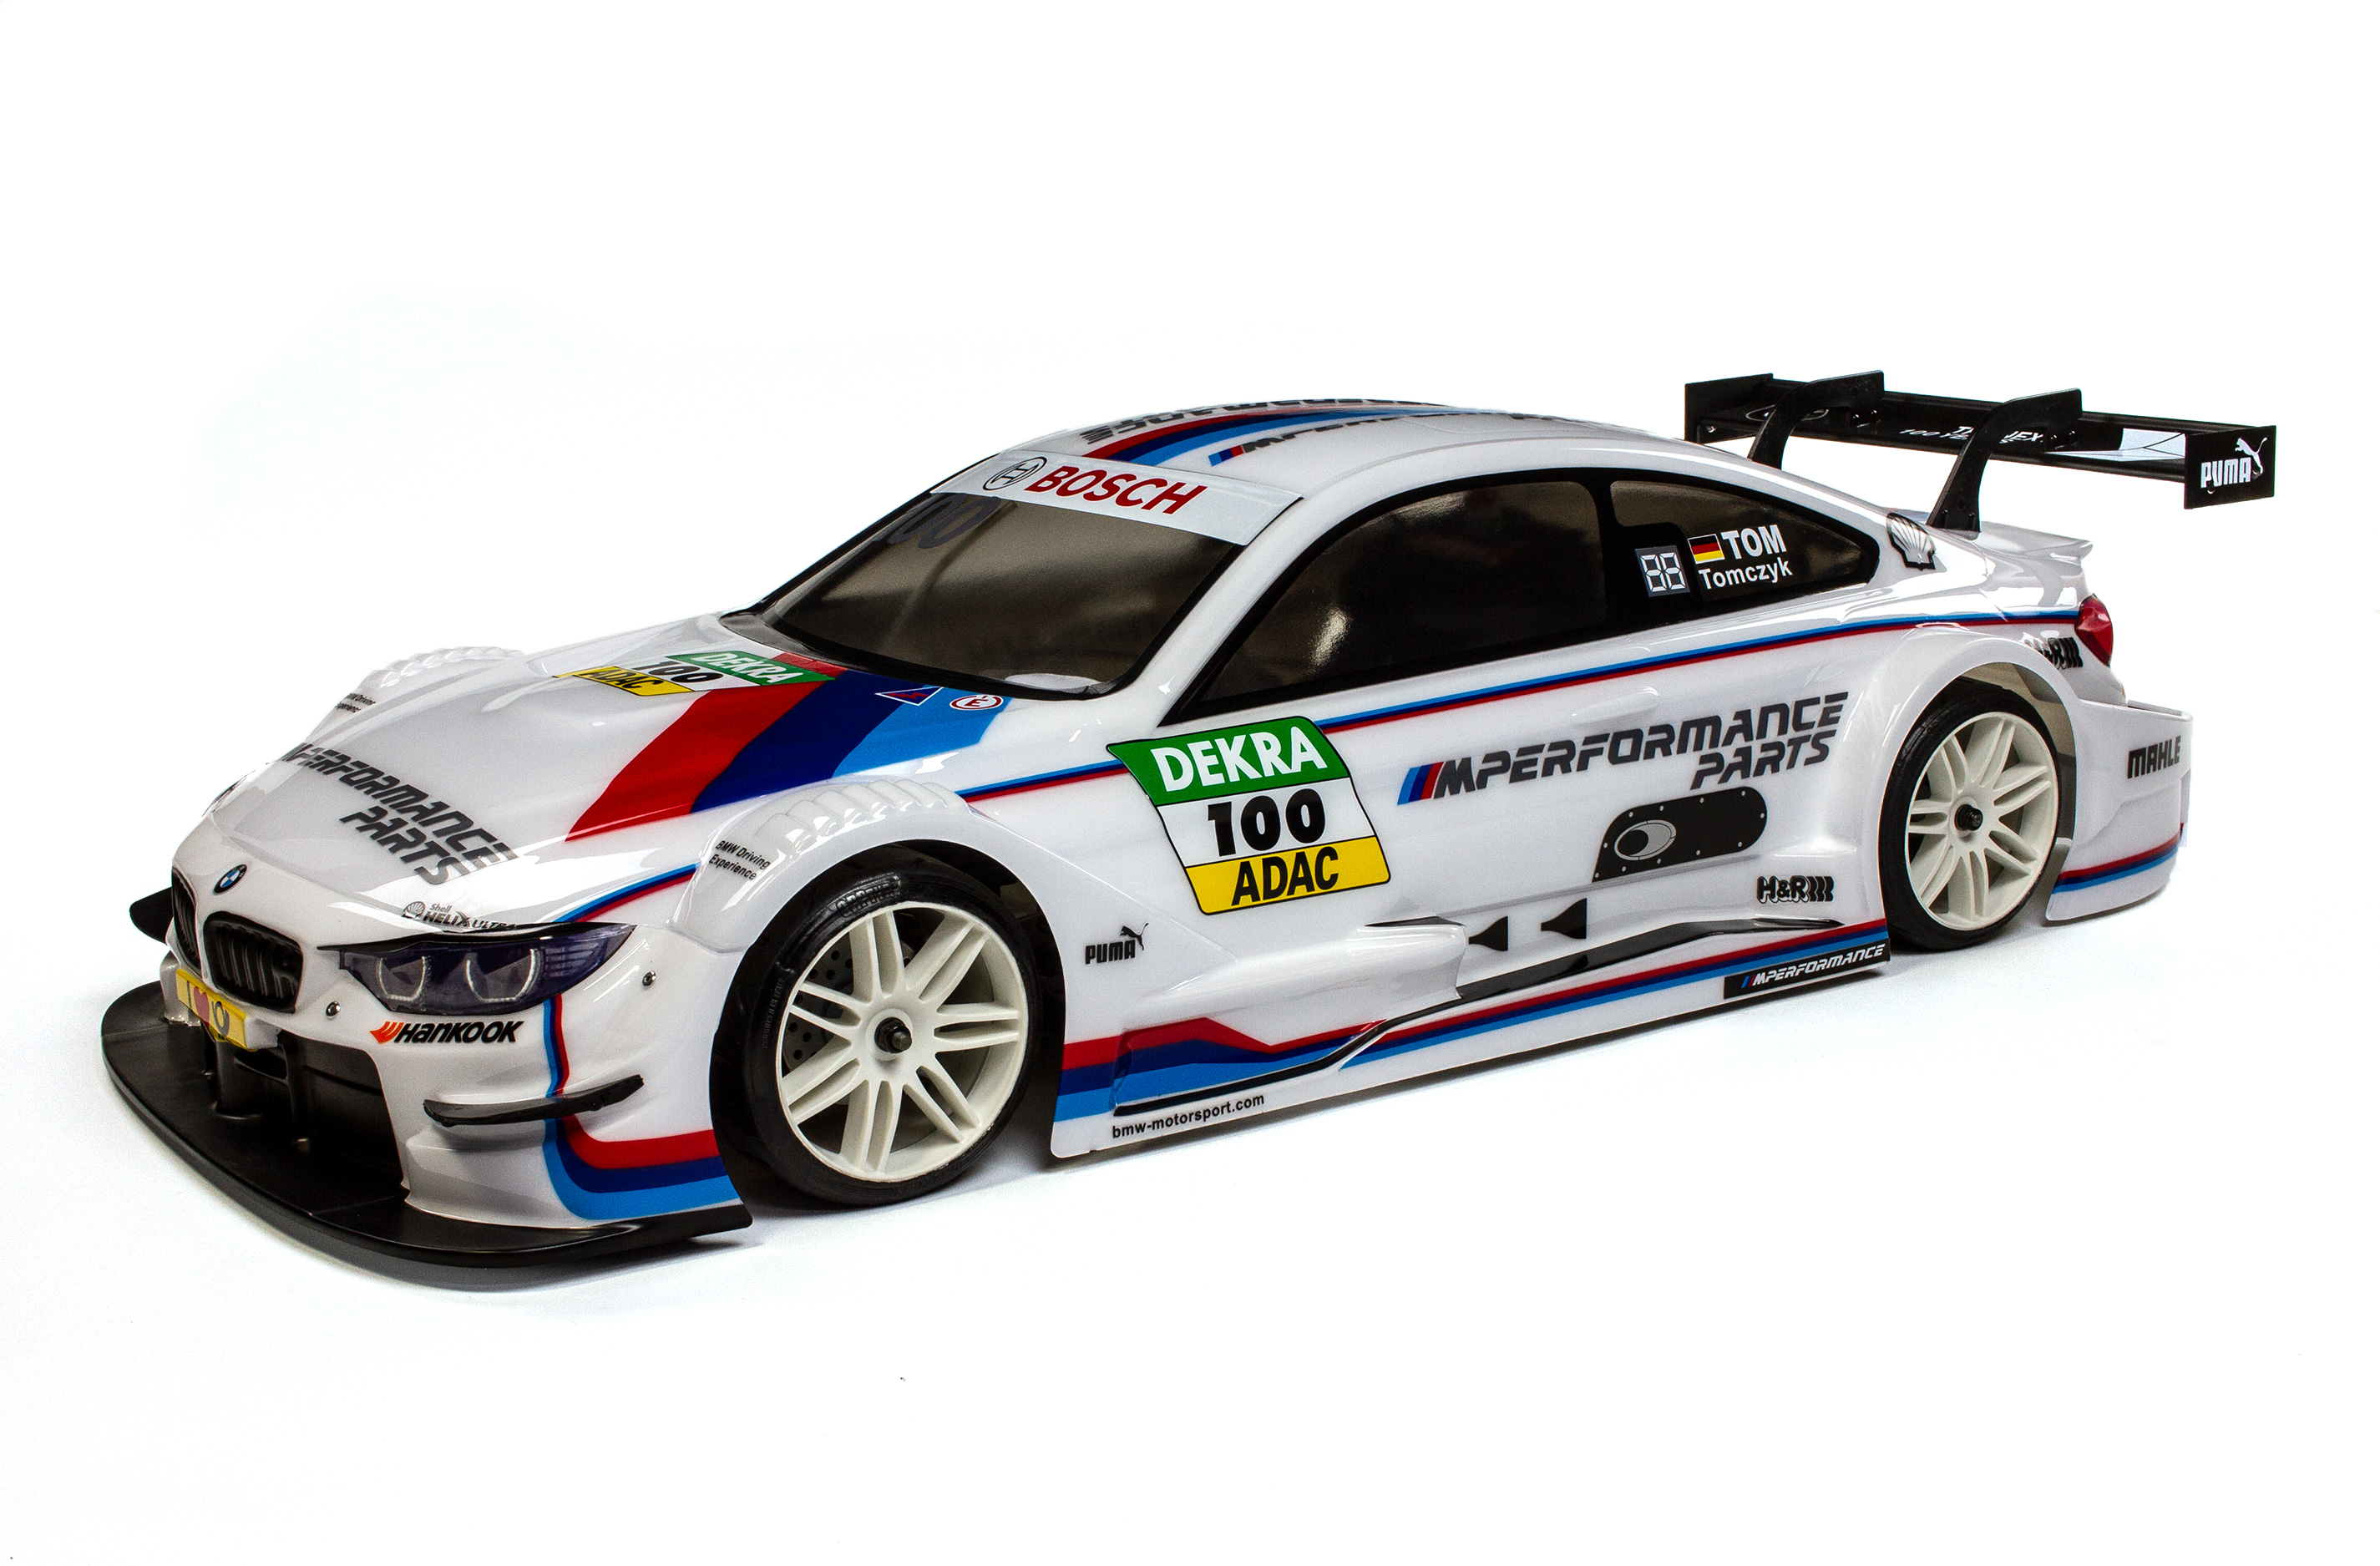 FG Raceline with BMW M4 body shell